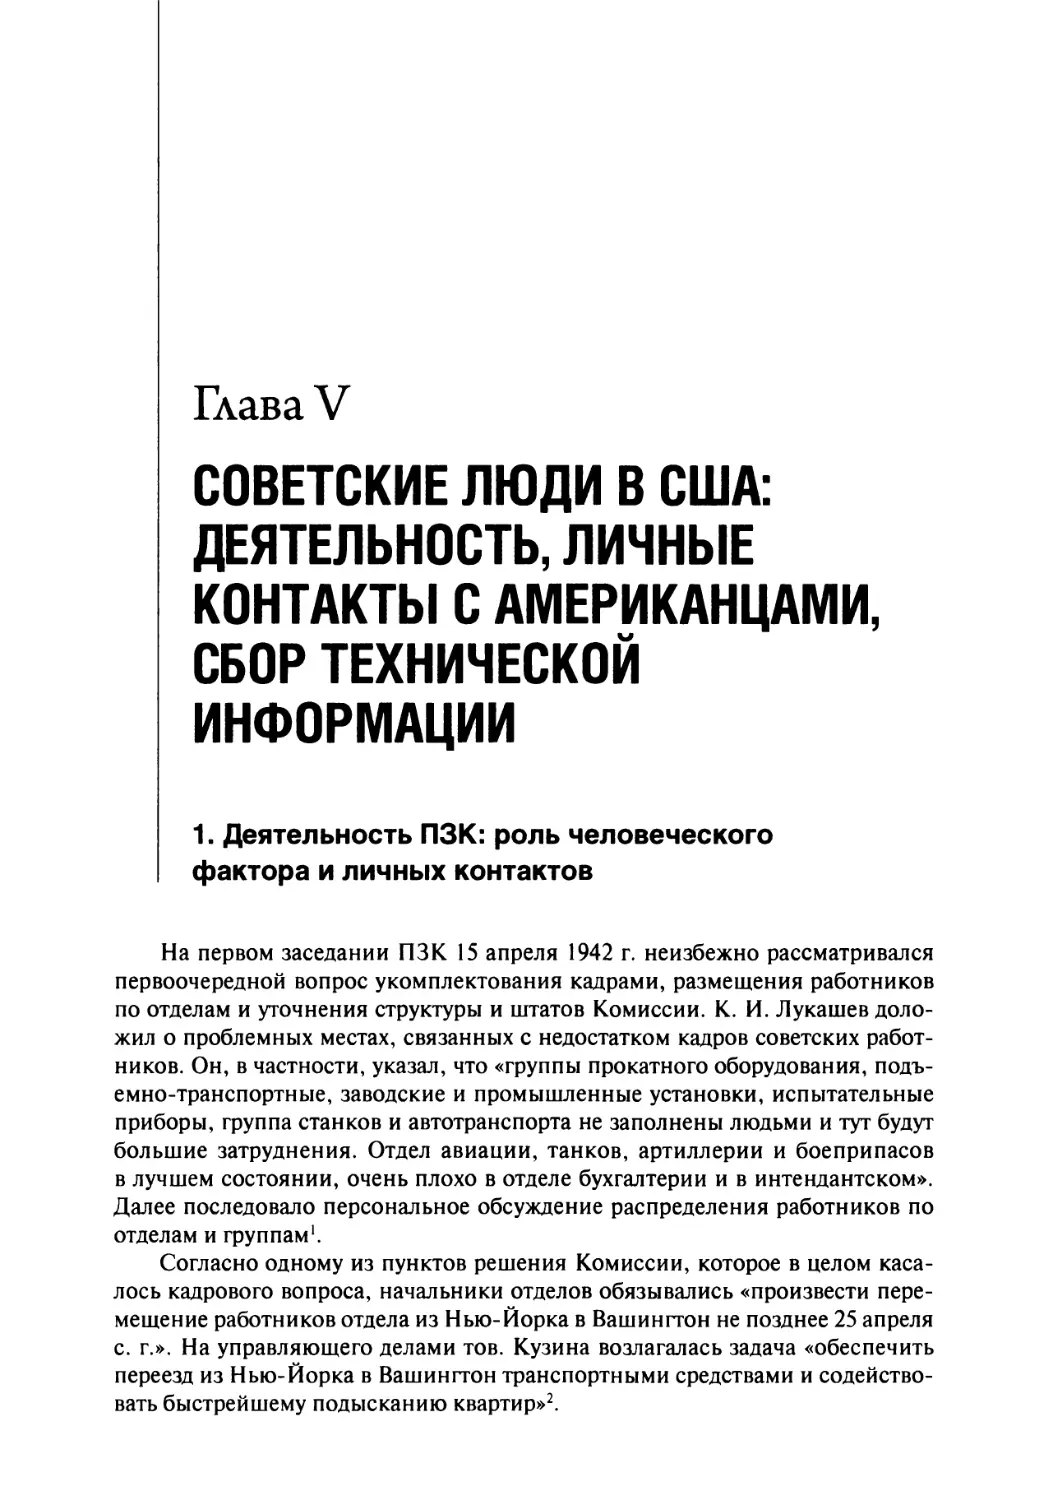 Глава V. Советские люди в США: деятельность, личные контакты с американцами, сбор технической информации